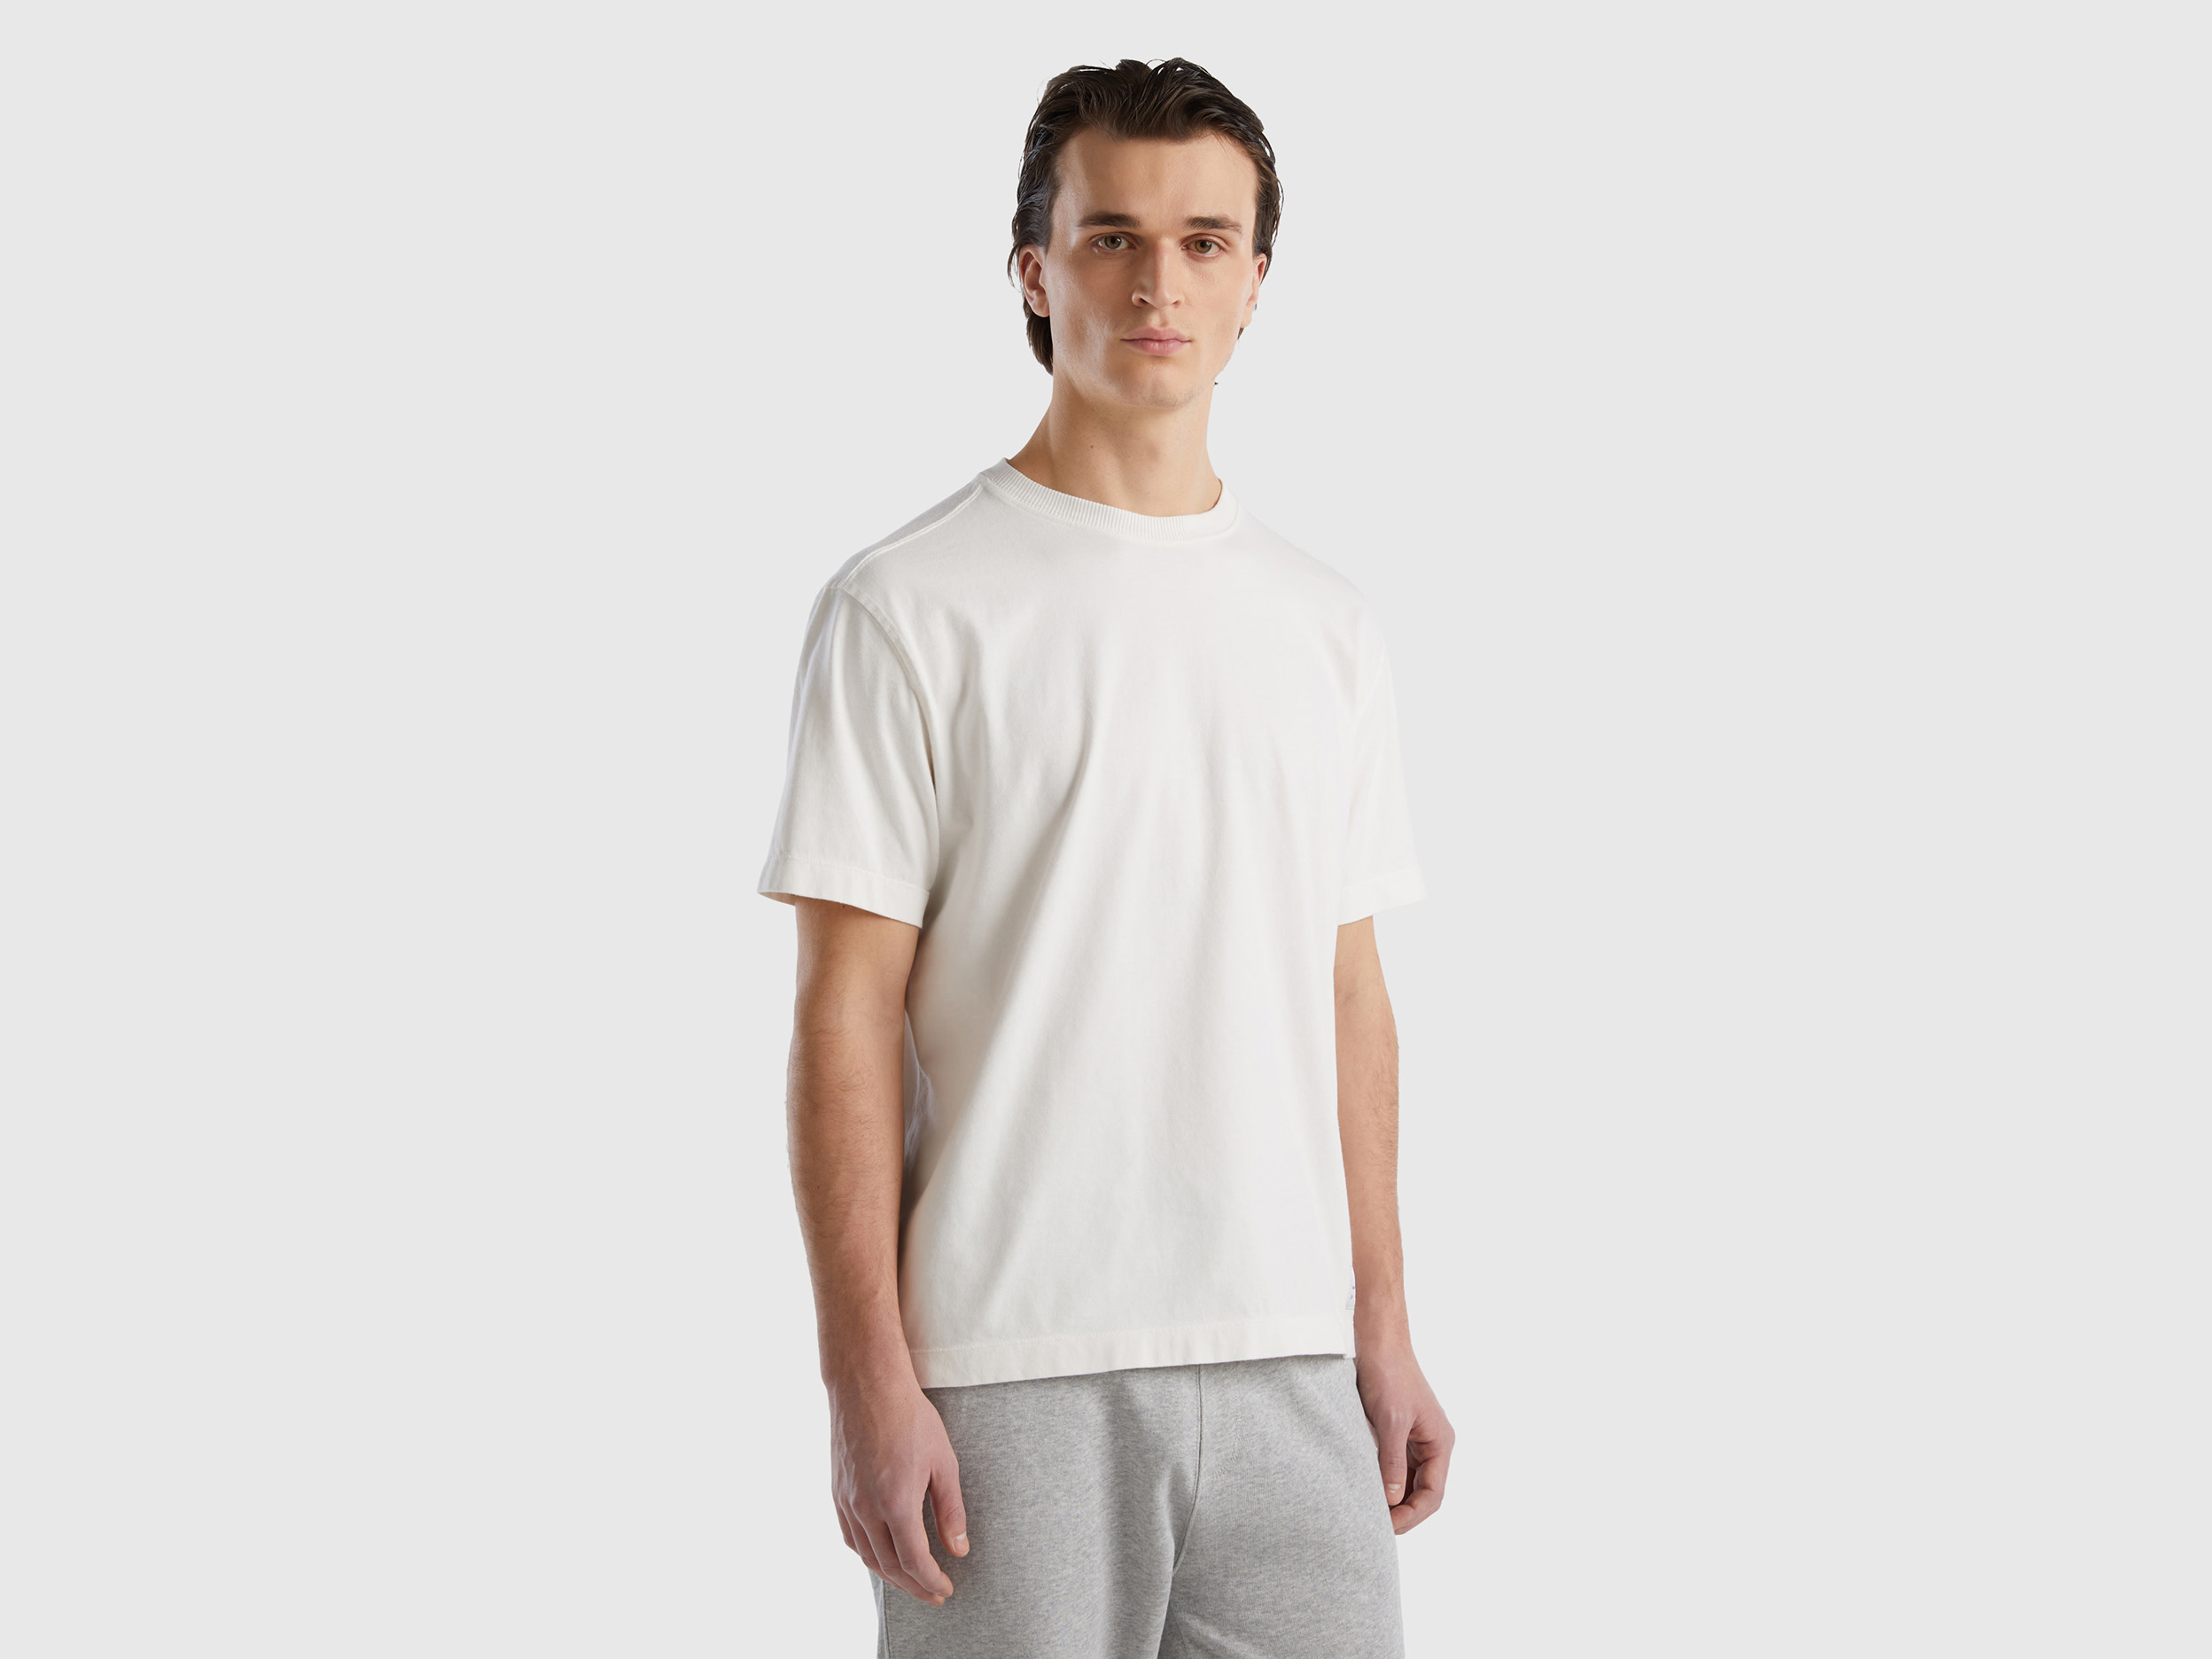 Benetton, 100% Organic Cotton Crew Neck T-shirt, size XXXL, Creamy White, Men